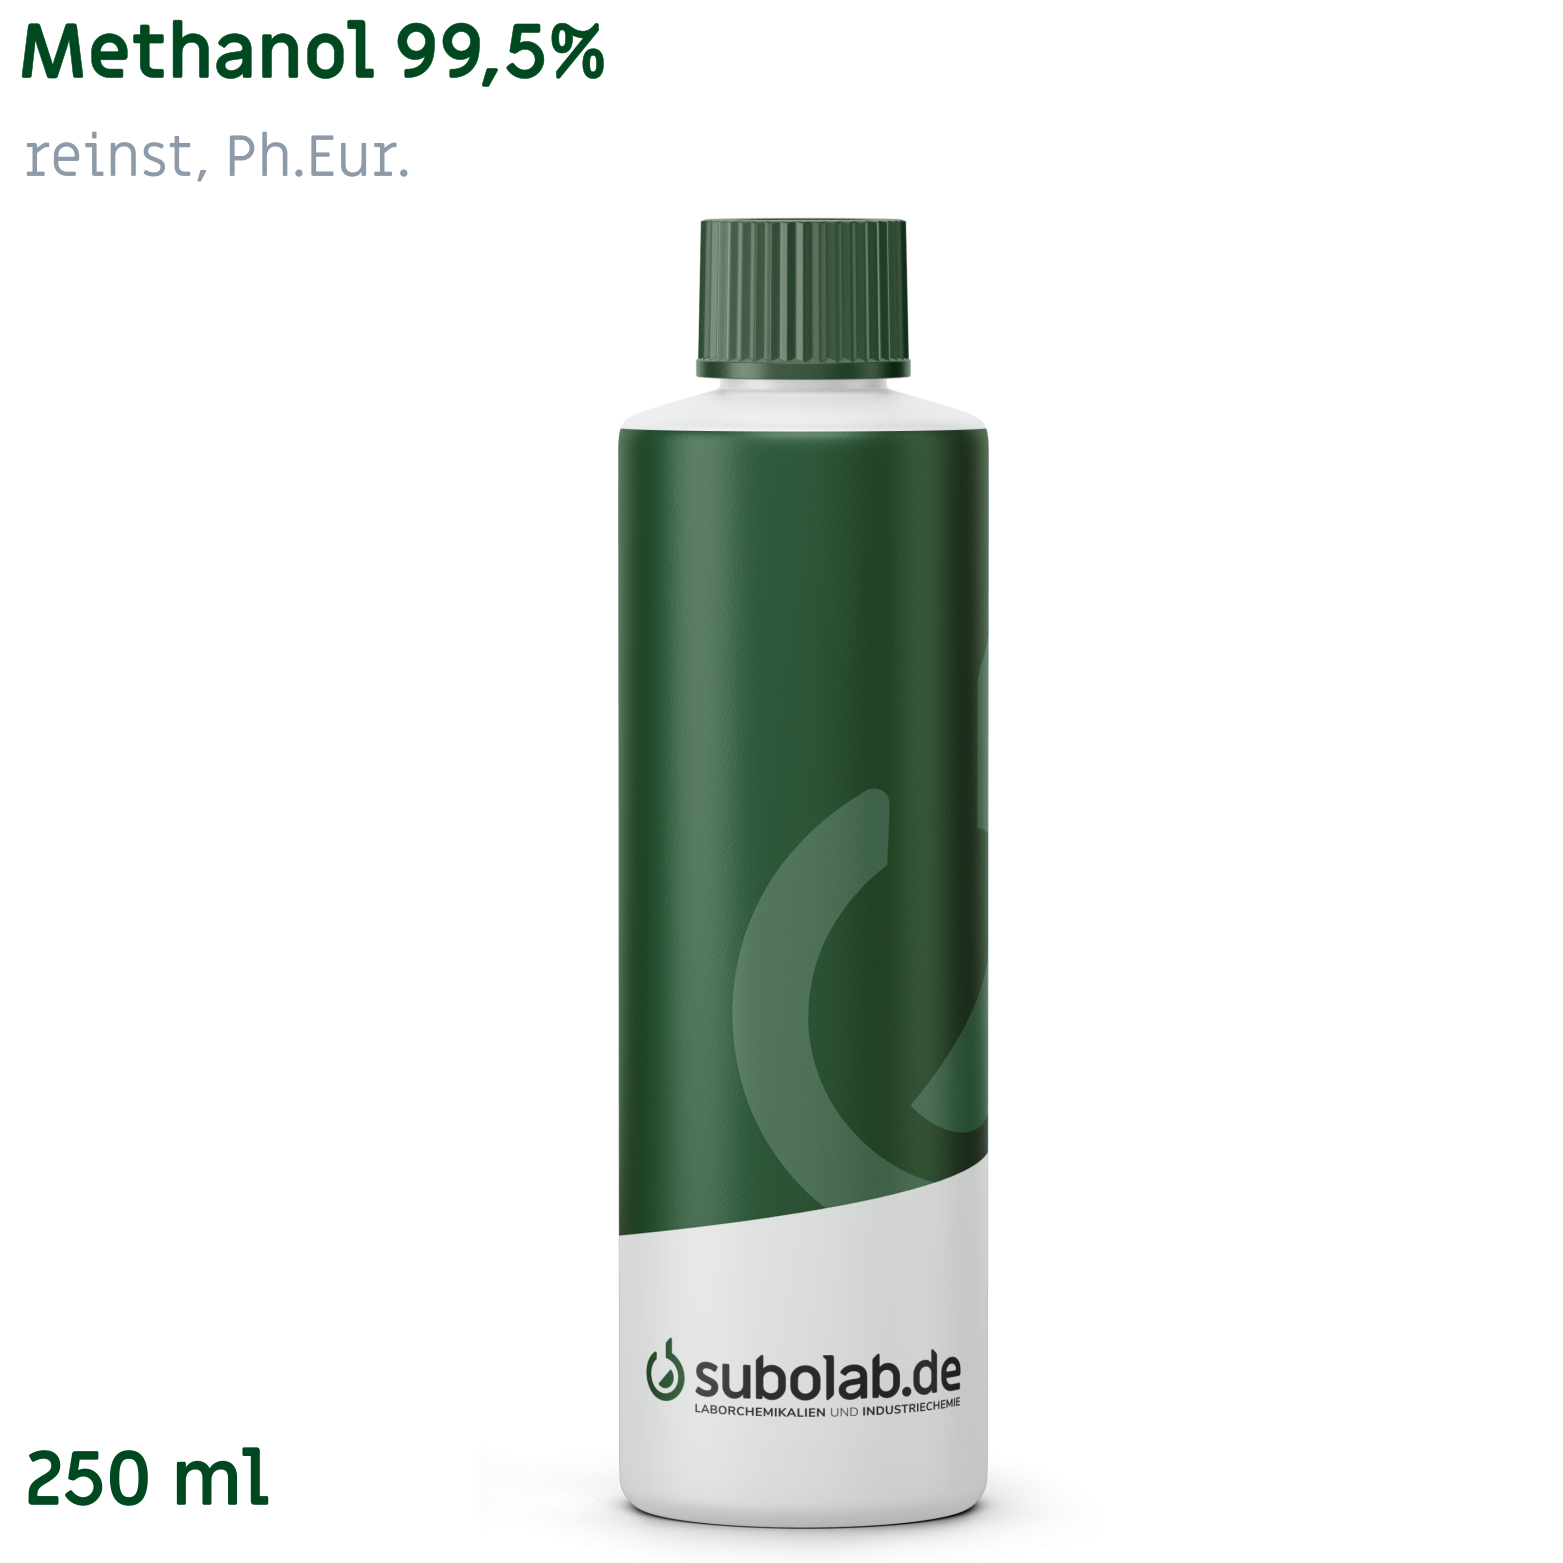 Bild von Methanol 99,5% reinst, Ph.Eur. (250 ml)